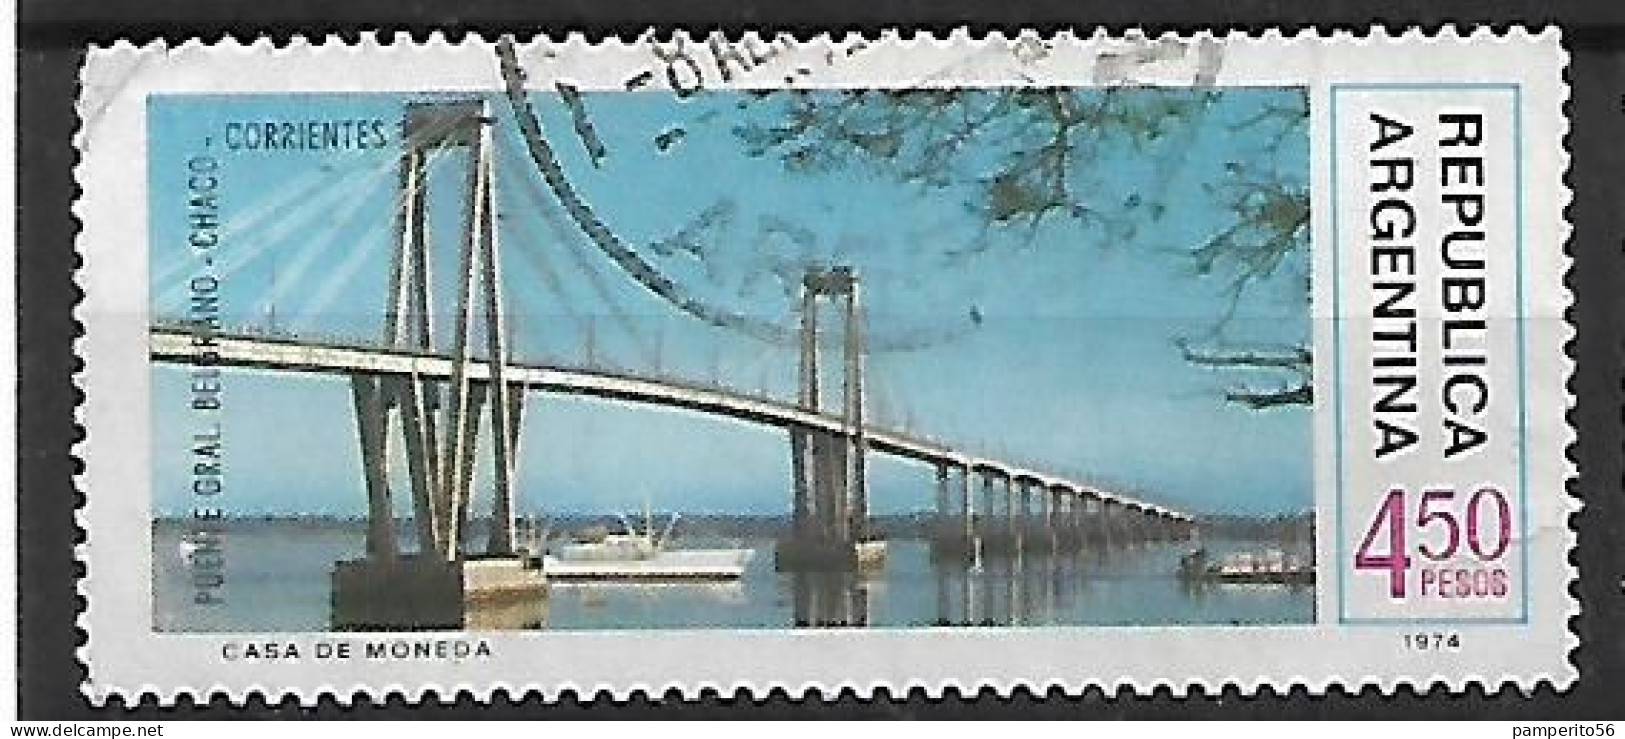 ARGENTINA - AÑO 1974 - Serie Obras De Infraestructura Nacional - Puente Chaco Corrientes - Usado - Usati